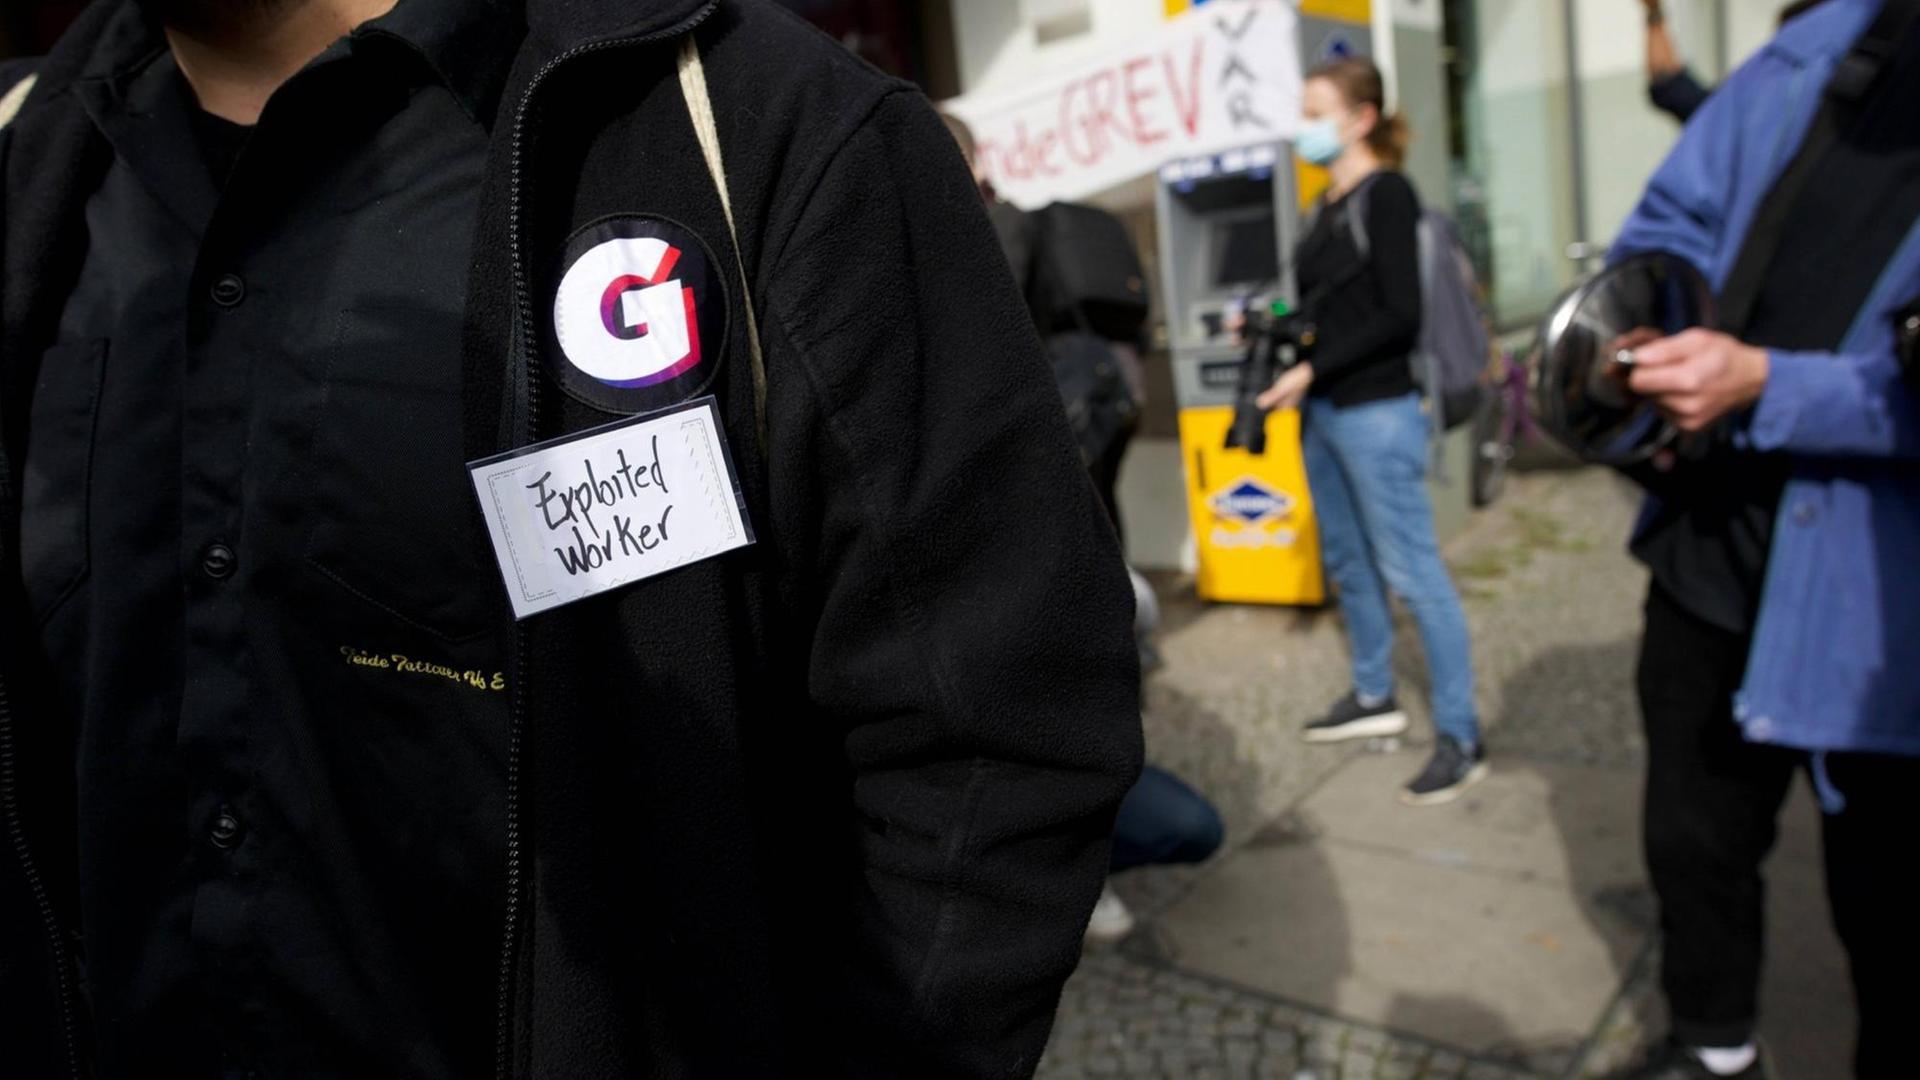 Im Vordergrund eine Person mit schwarzer Jacke, die das „G“ der Firma Gorillas als Sticker auf der Jacke trägt. Darunter ein Klebestreifen mit der Aufschrift „Exploited Worker“